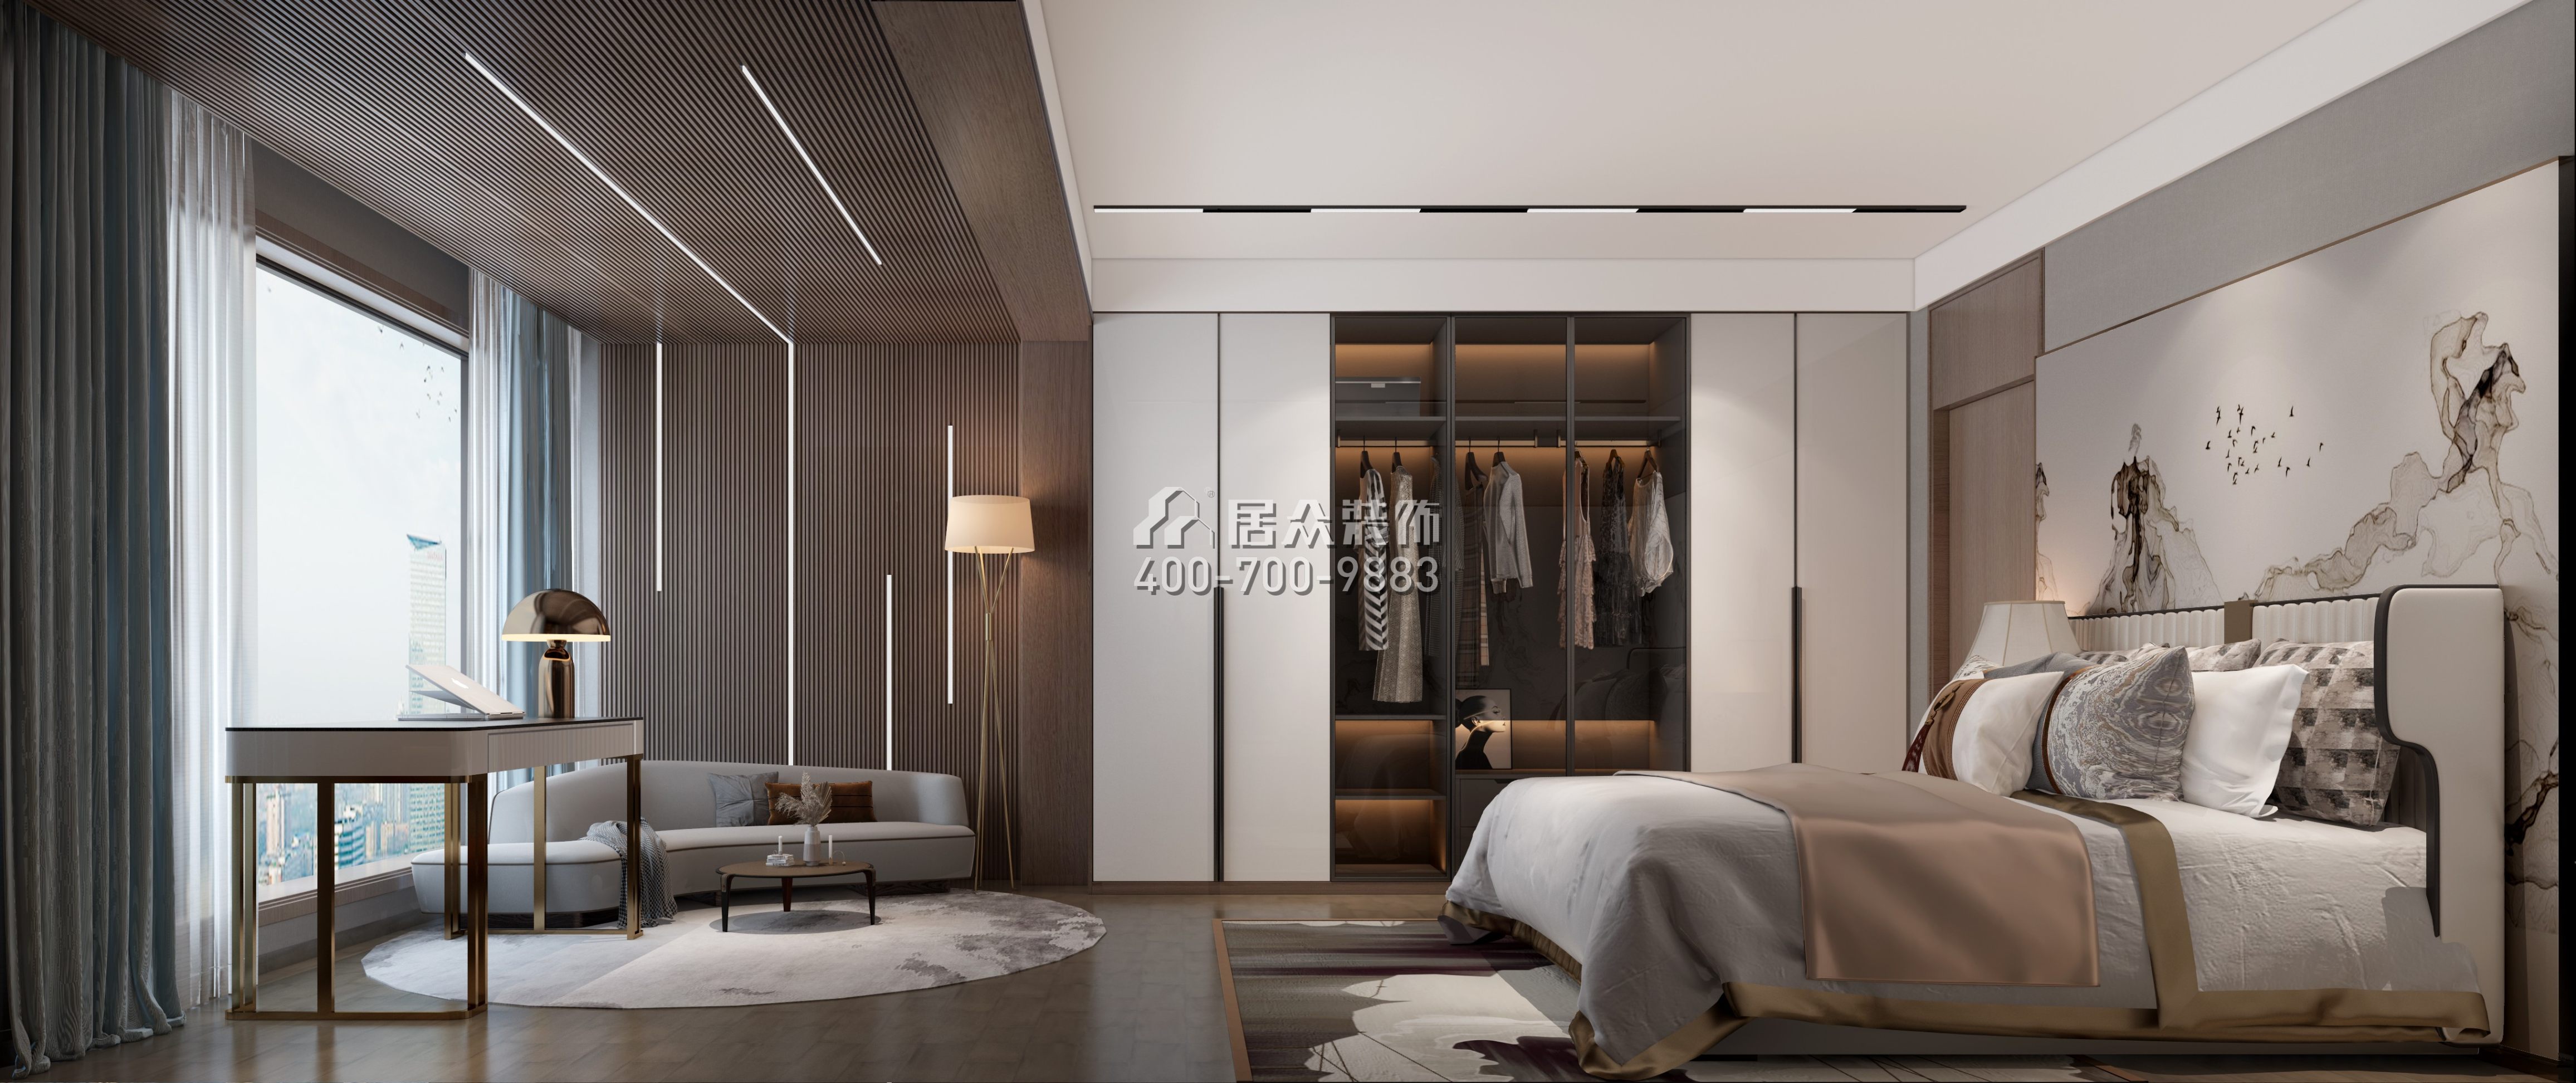 万科金域华府189平方米中式风格平层户型卧室装修效果图